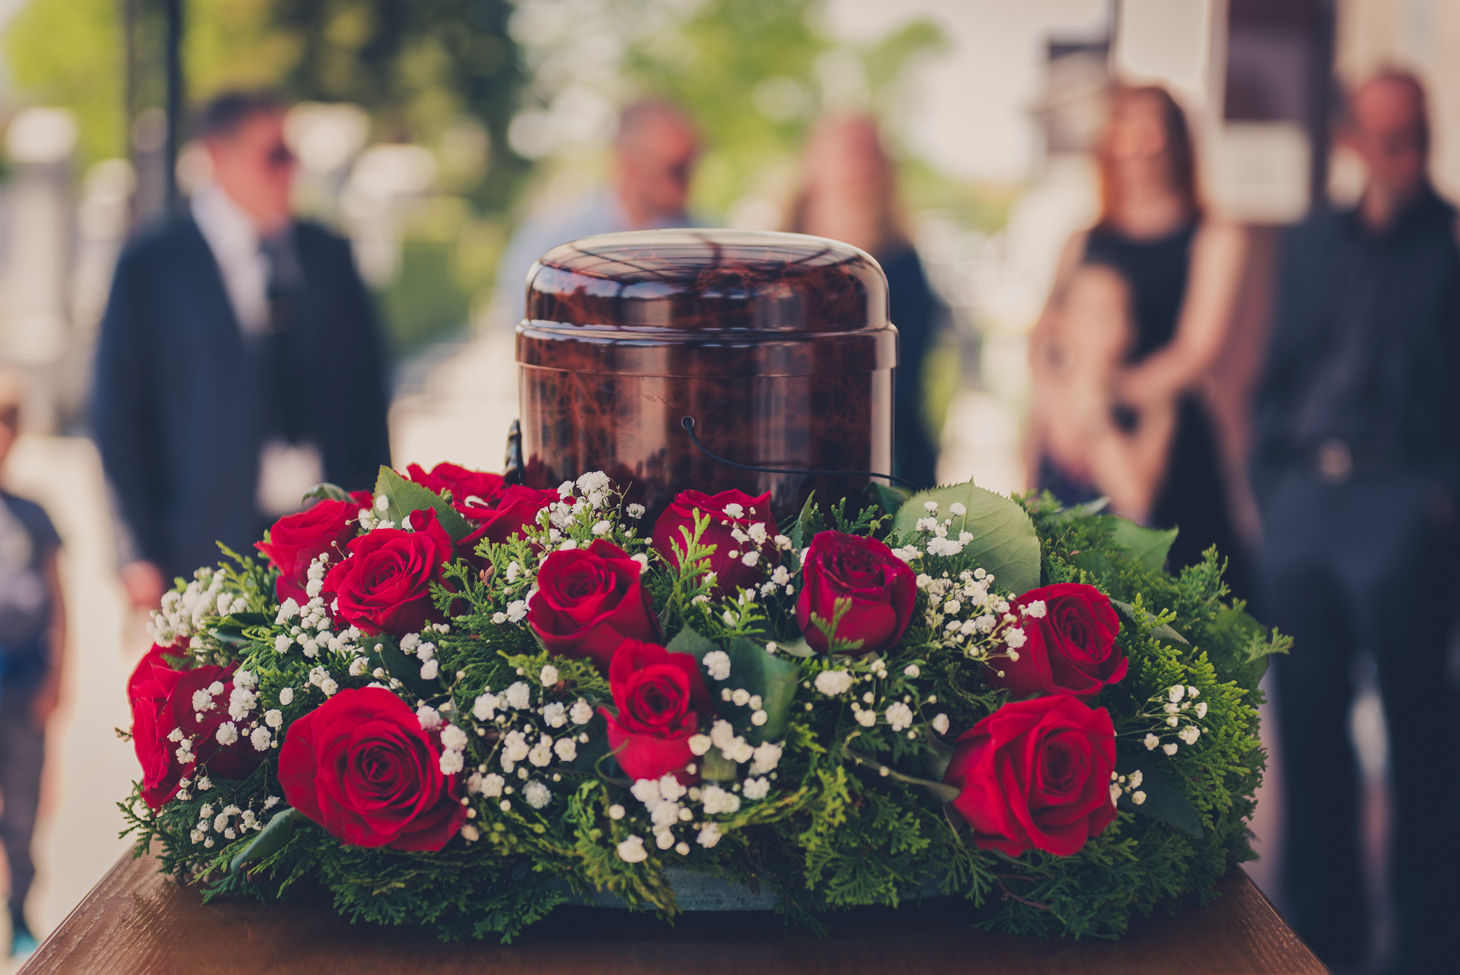 Eine Urne steht bei der Beerdigung auf einem Tisch mit Blumen.